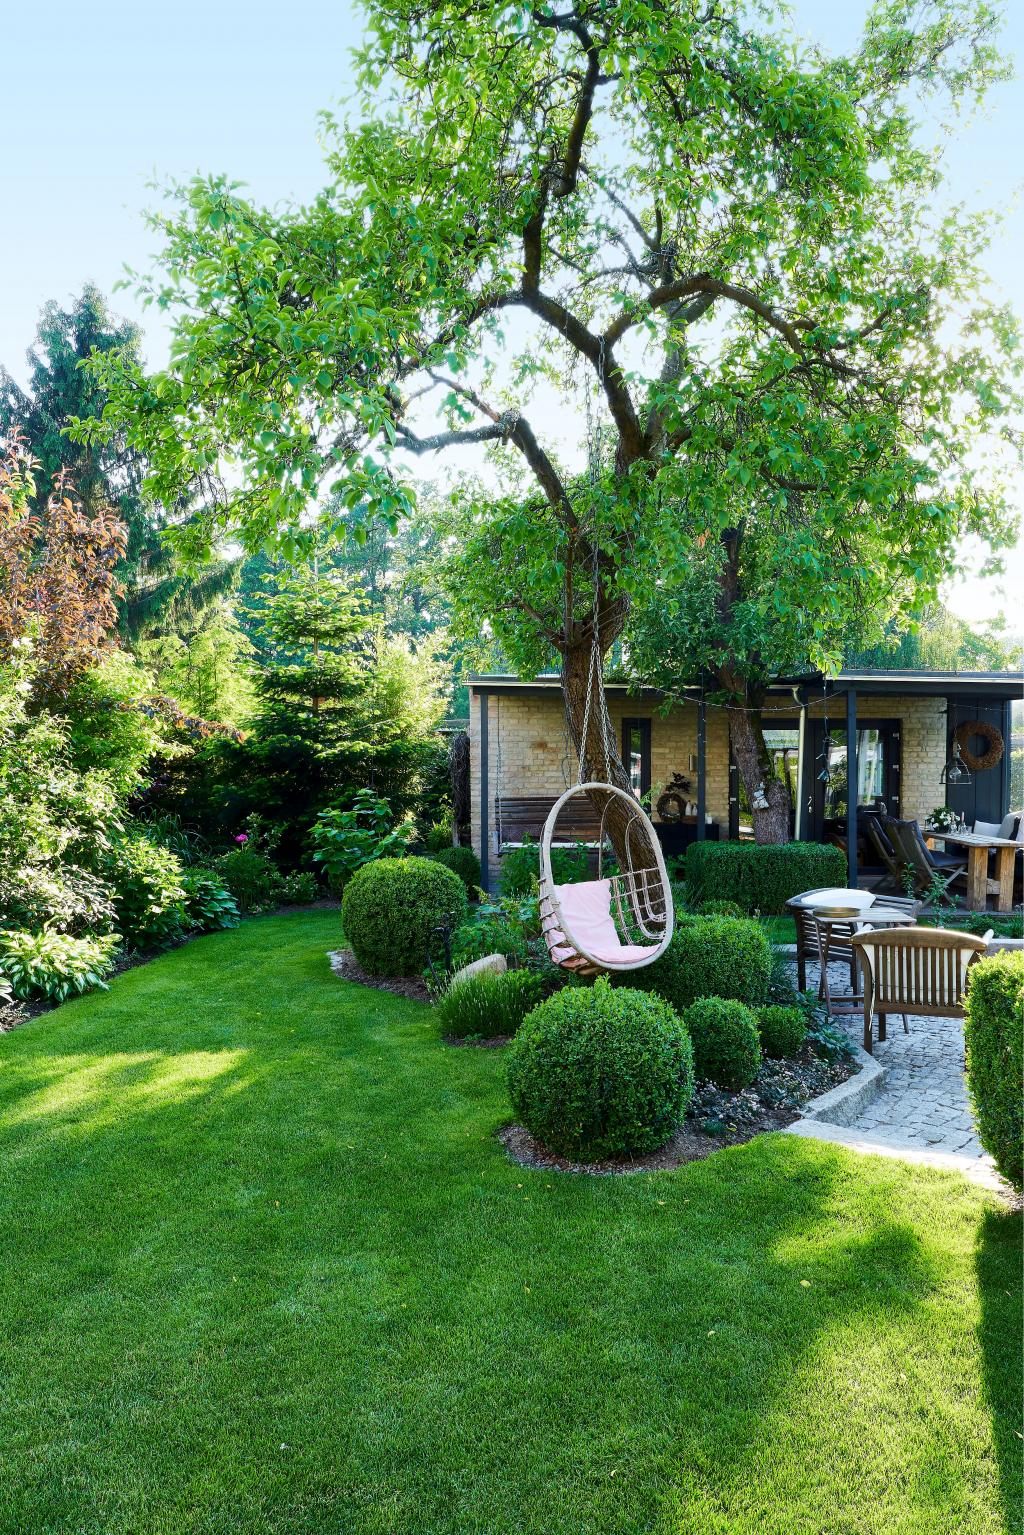 Blick in den Garten eines Einfamilienhauses mit Buchsbaumkugeln und Hängesessel im Baum.